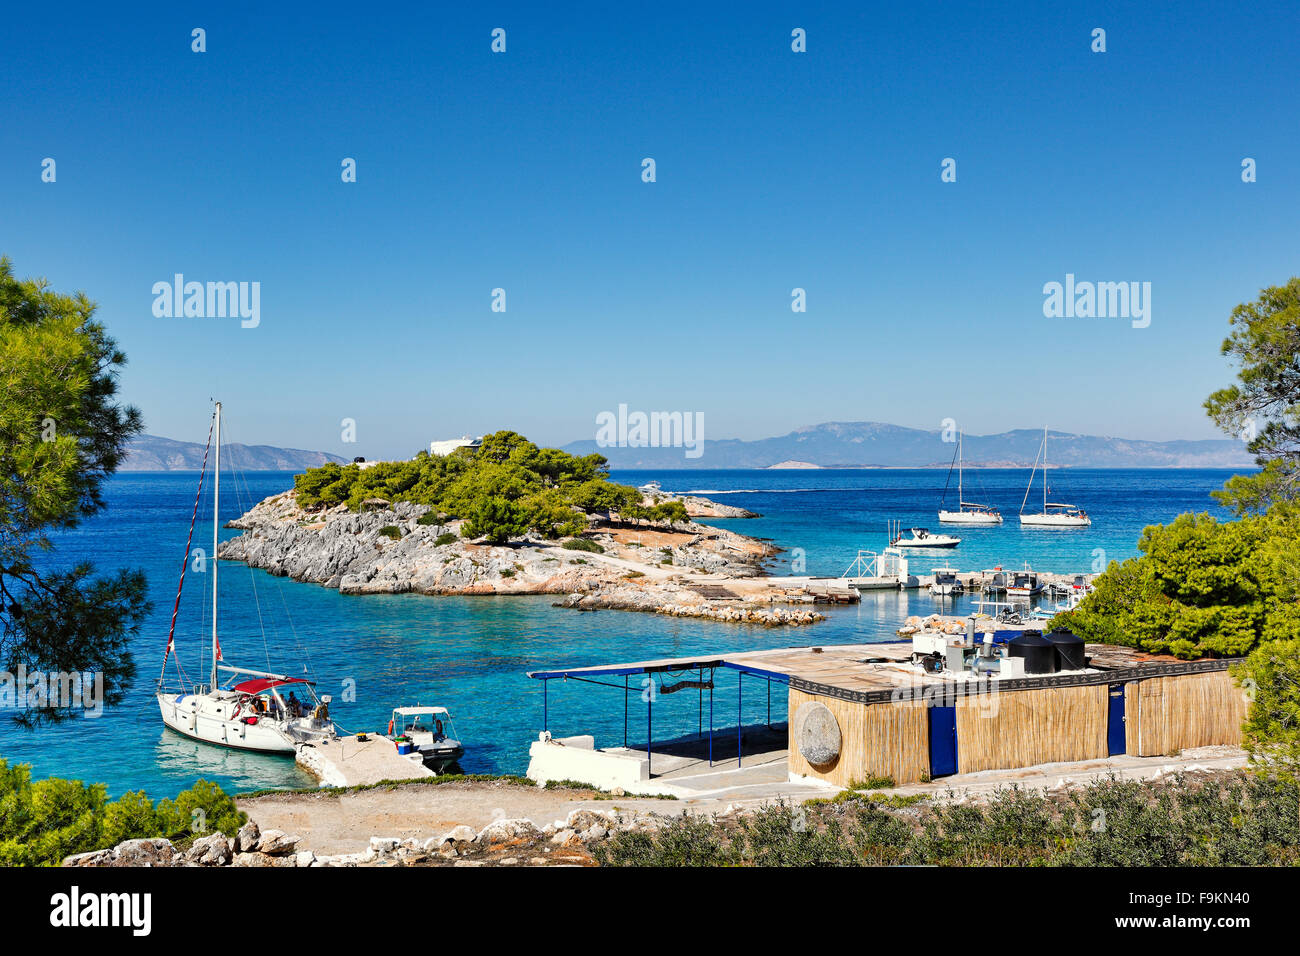 La petite île près de l'île d'Agistri Aponisos, Grèce Banque D'Images